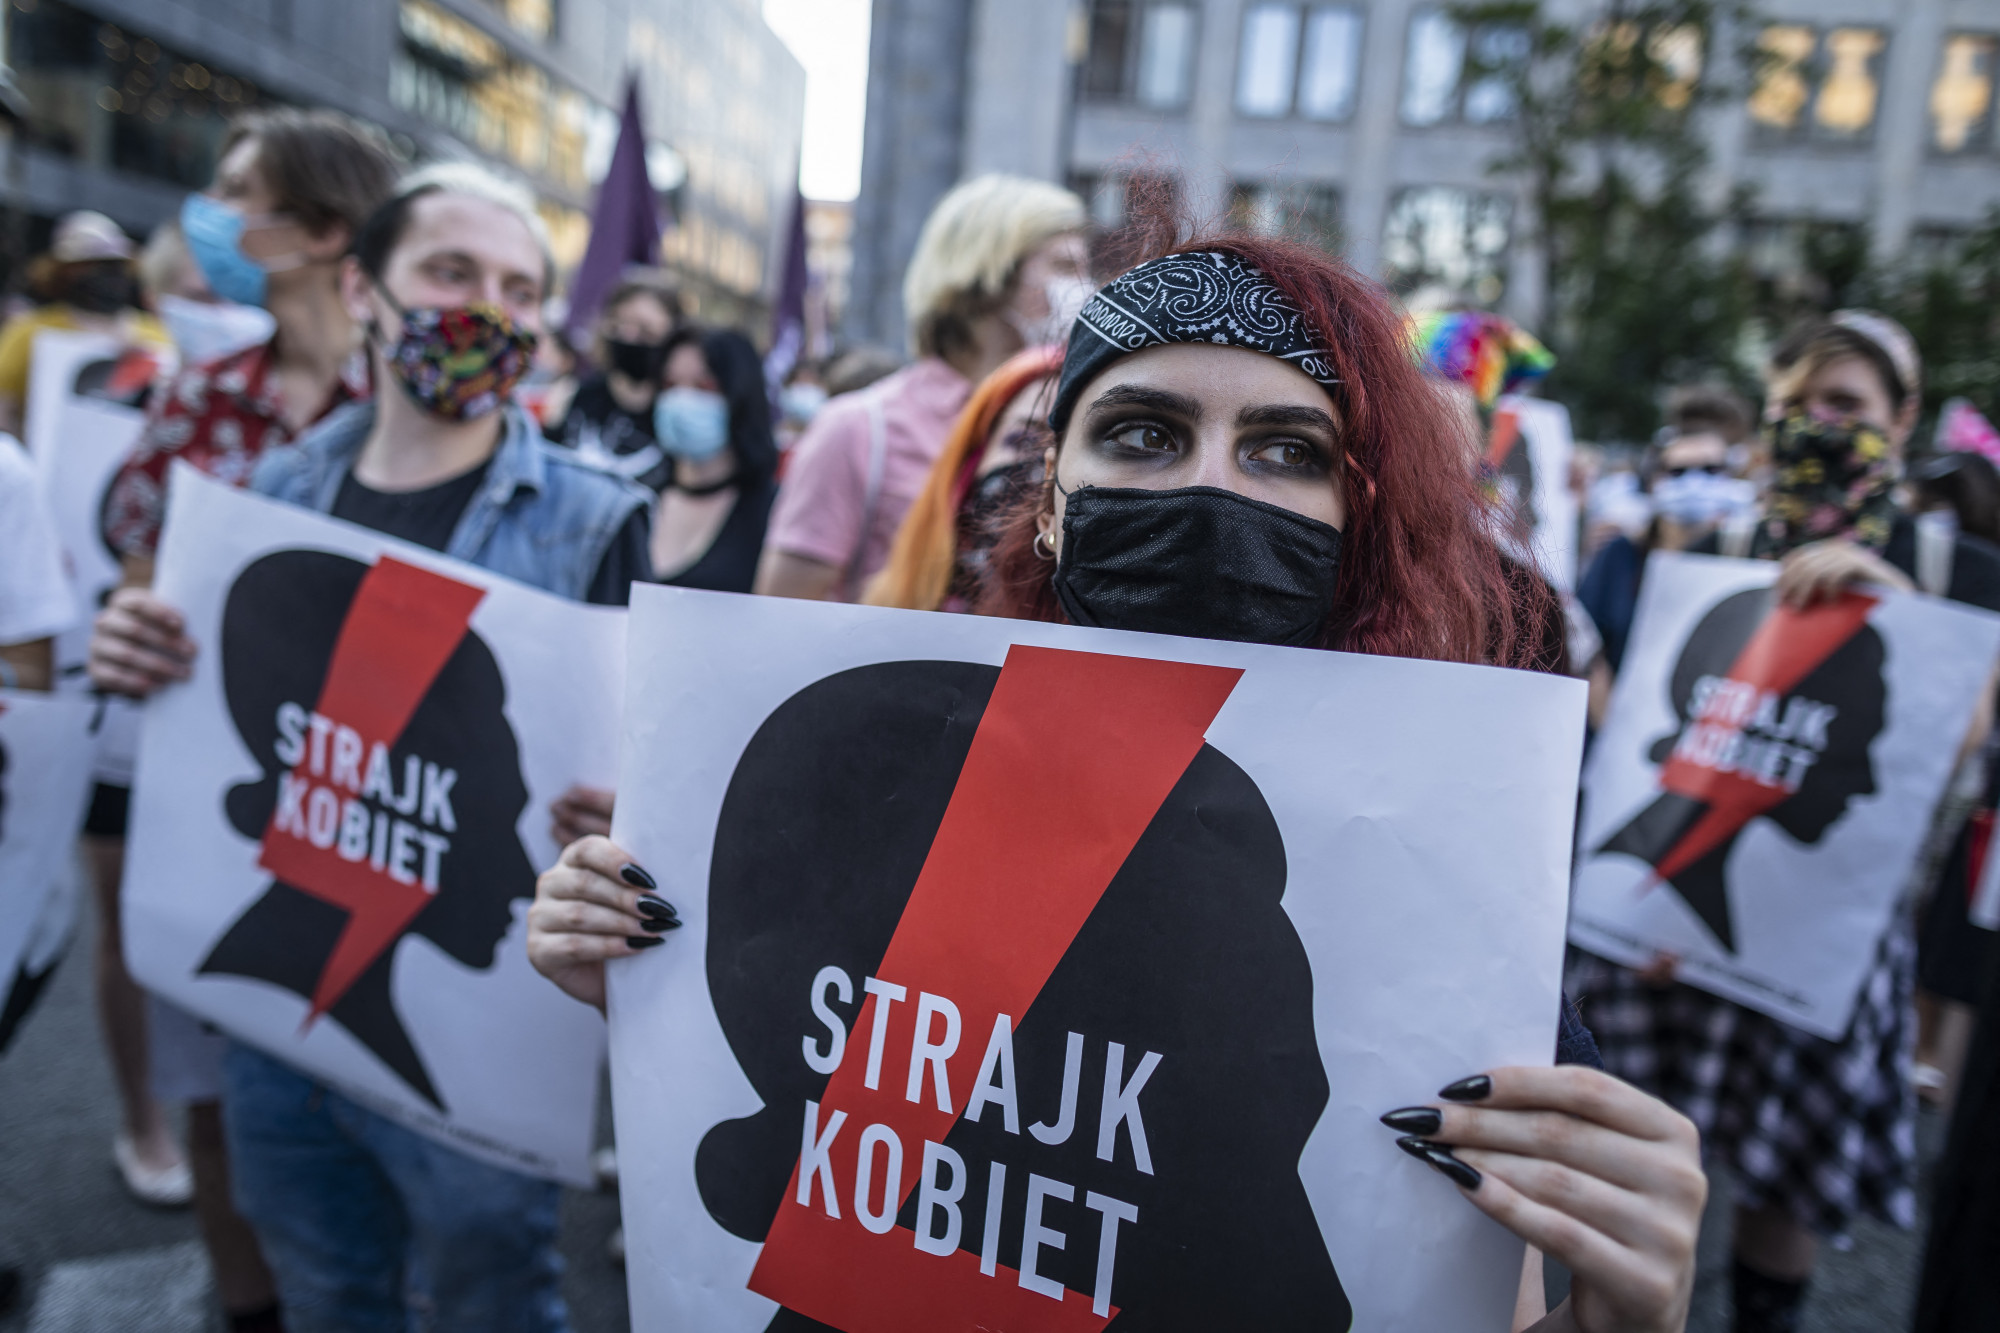 A lengyel legfelsőbb bíróság is felmentette a nőt, aki leszúrta az őt megerőszakolni próbáló férjét